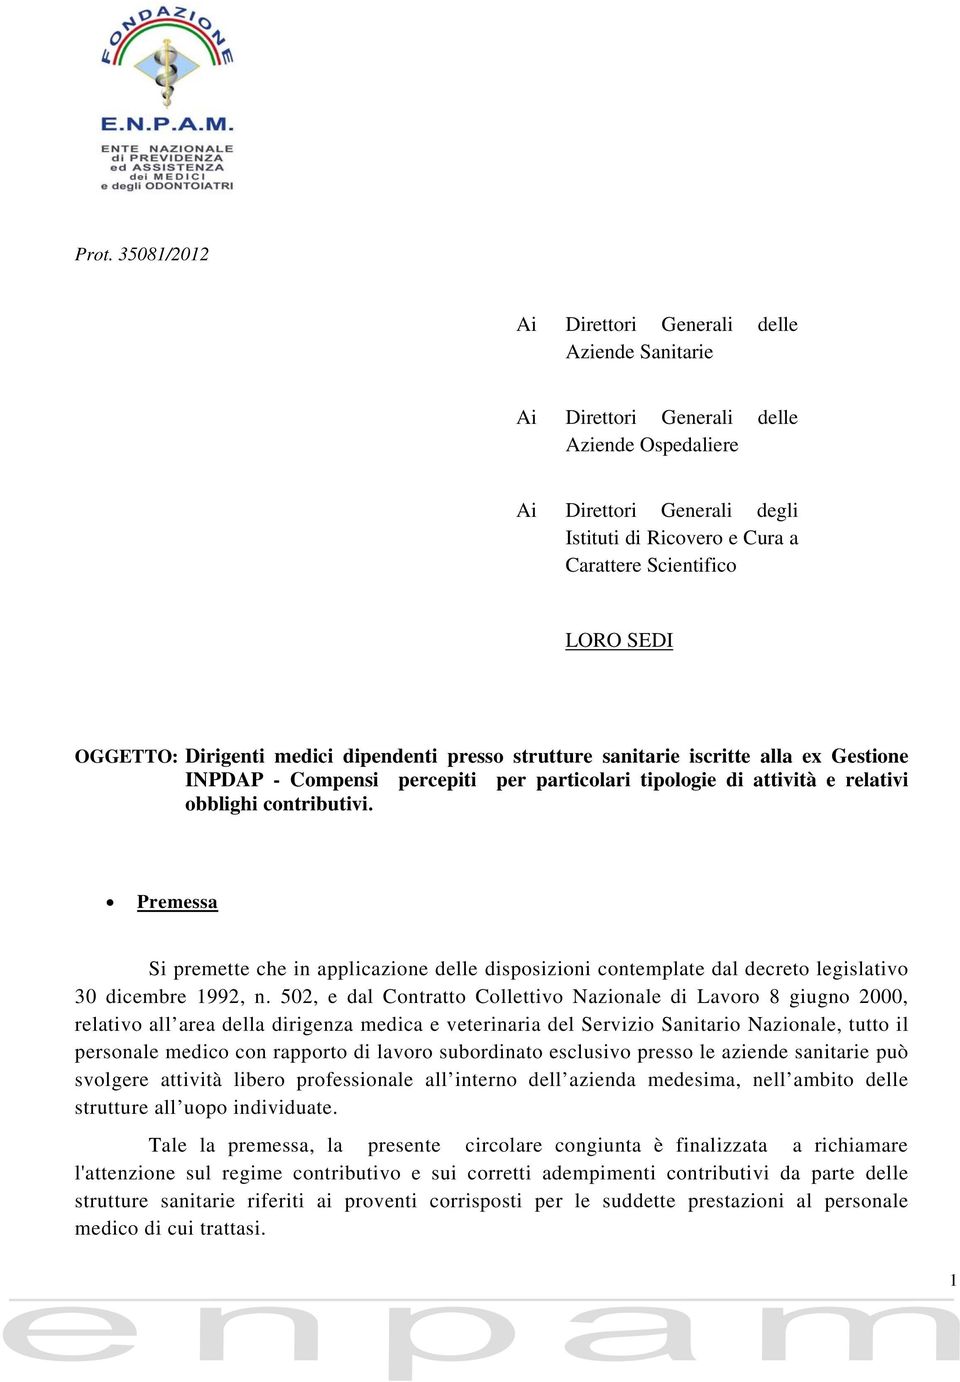 Premessa Si premette che in applicazione delle disposizioni contemplate dal decreto legislativo 30 dicembre 1992, n.